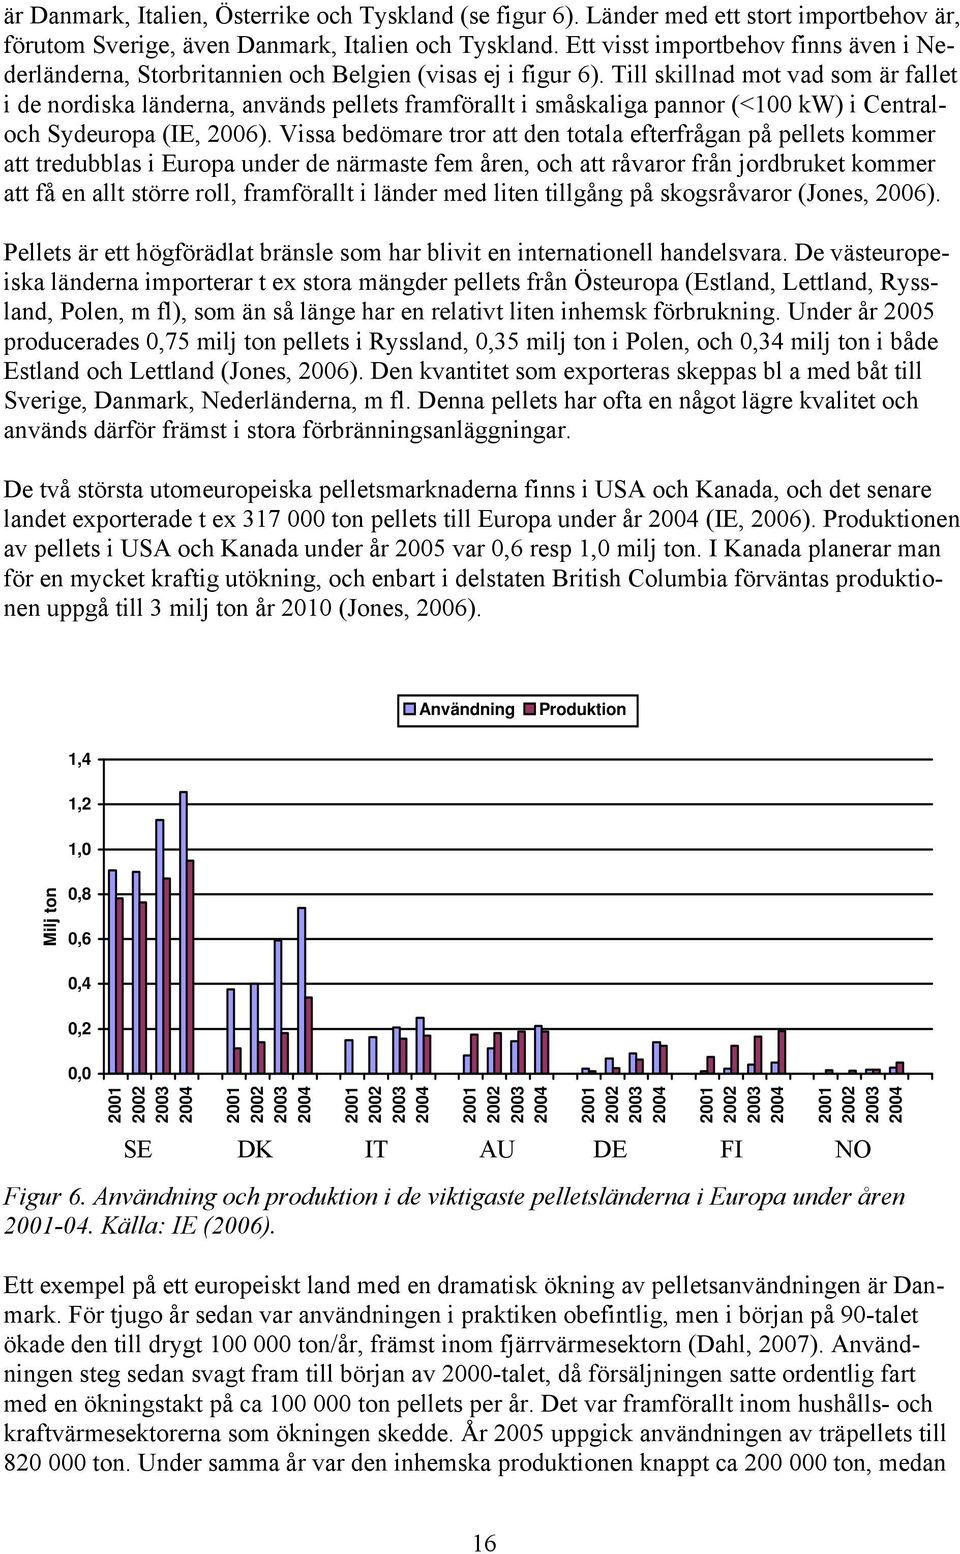 Till skillnad mot vad som är fallet i de nordiska länderna, används pellets framförallt i småskaliga pannor (<100 kw) i Centraloch Sydeuropa (IE, 2006).